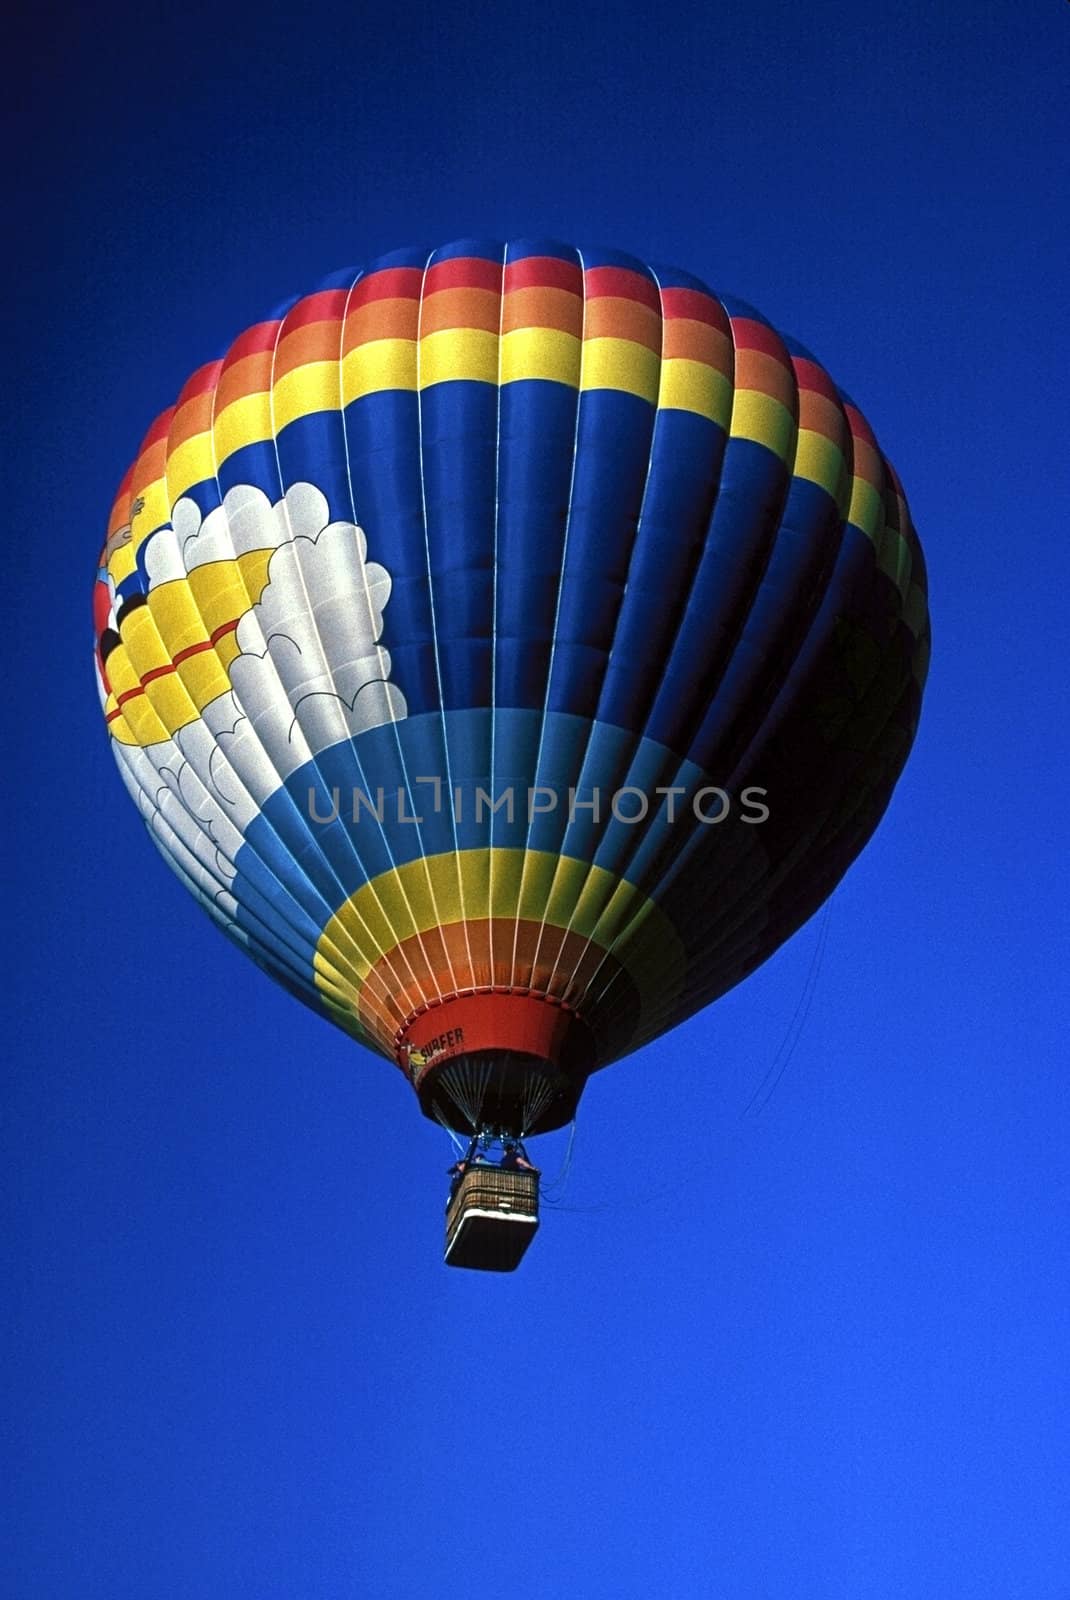 Hot air baloon by jol66